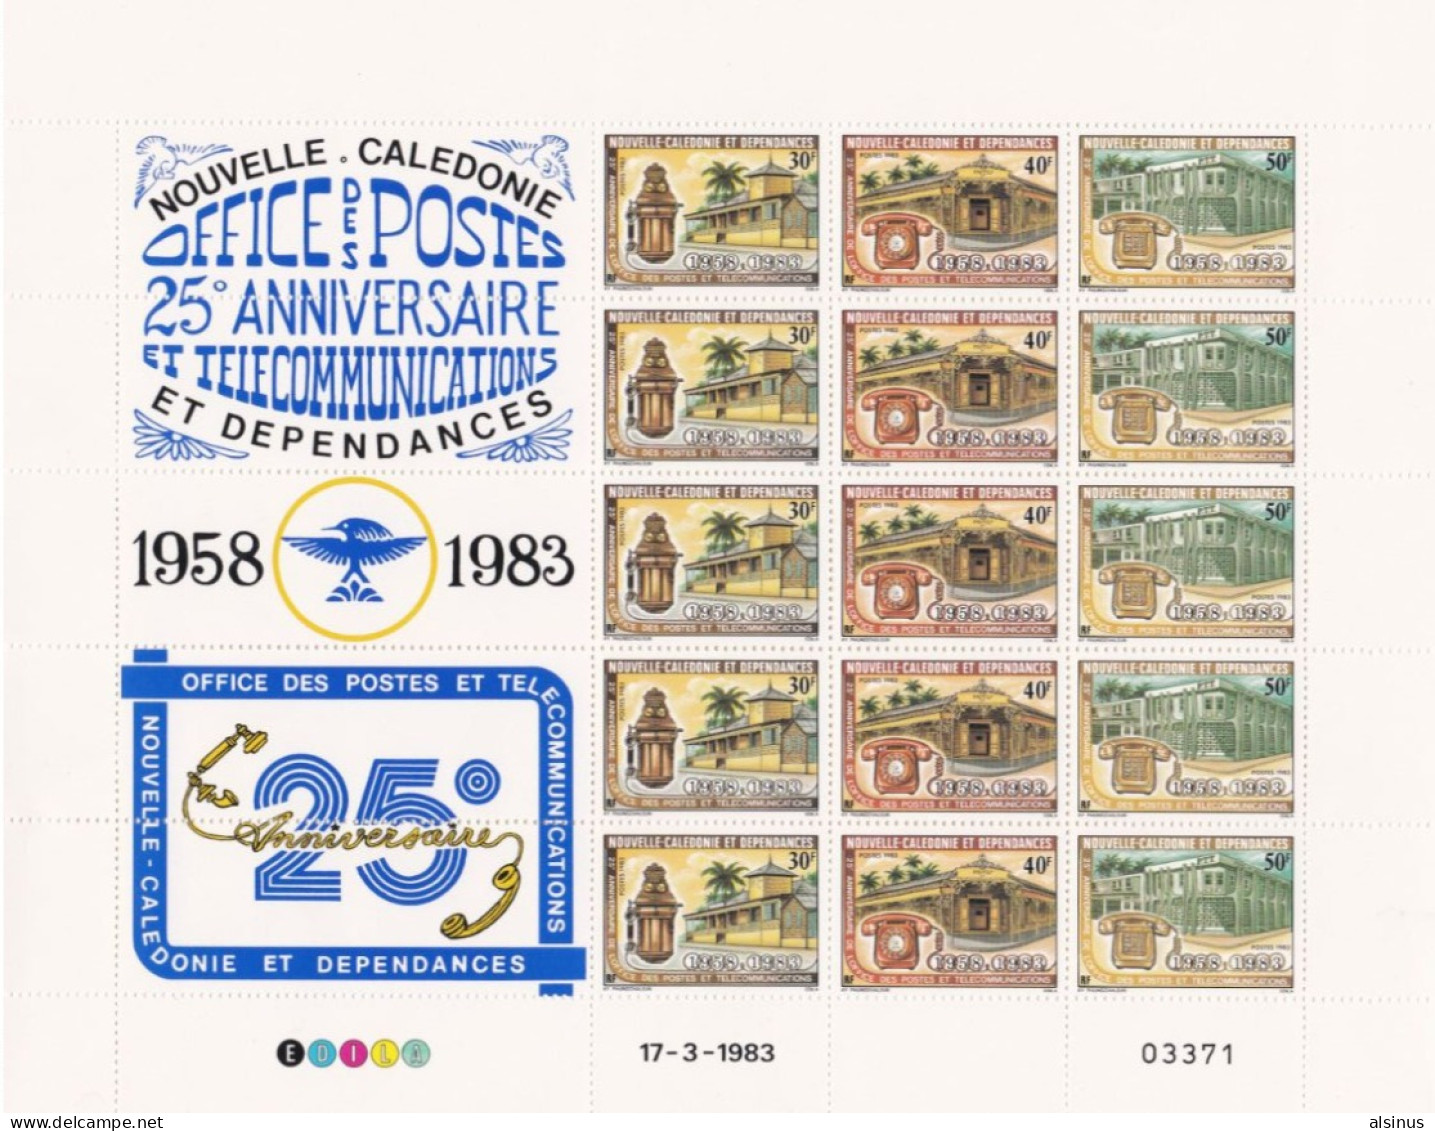 NOUVELLE CALEDONIE - 25e ANNIVERSAIRE POSTES & TELECOMMUCATIONS- N° 474A - FEUILLET DE 5 BANDES DES 3 TIMBRES - Unused Stamps